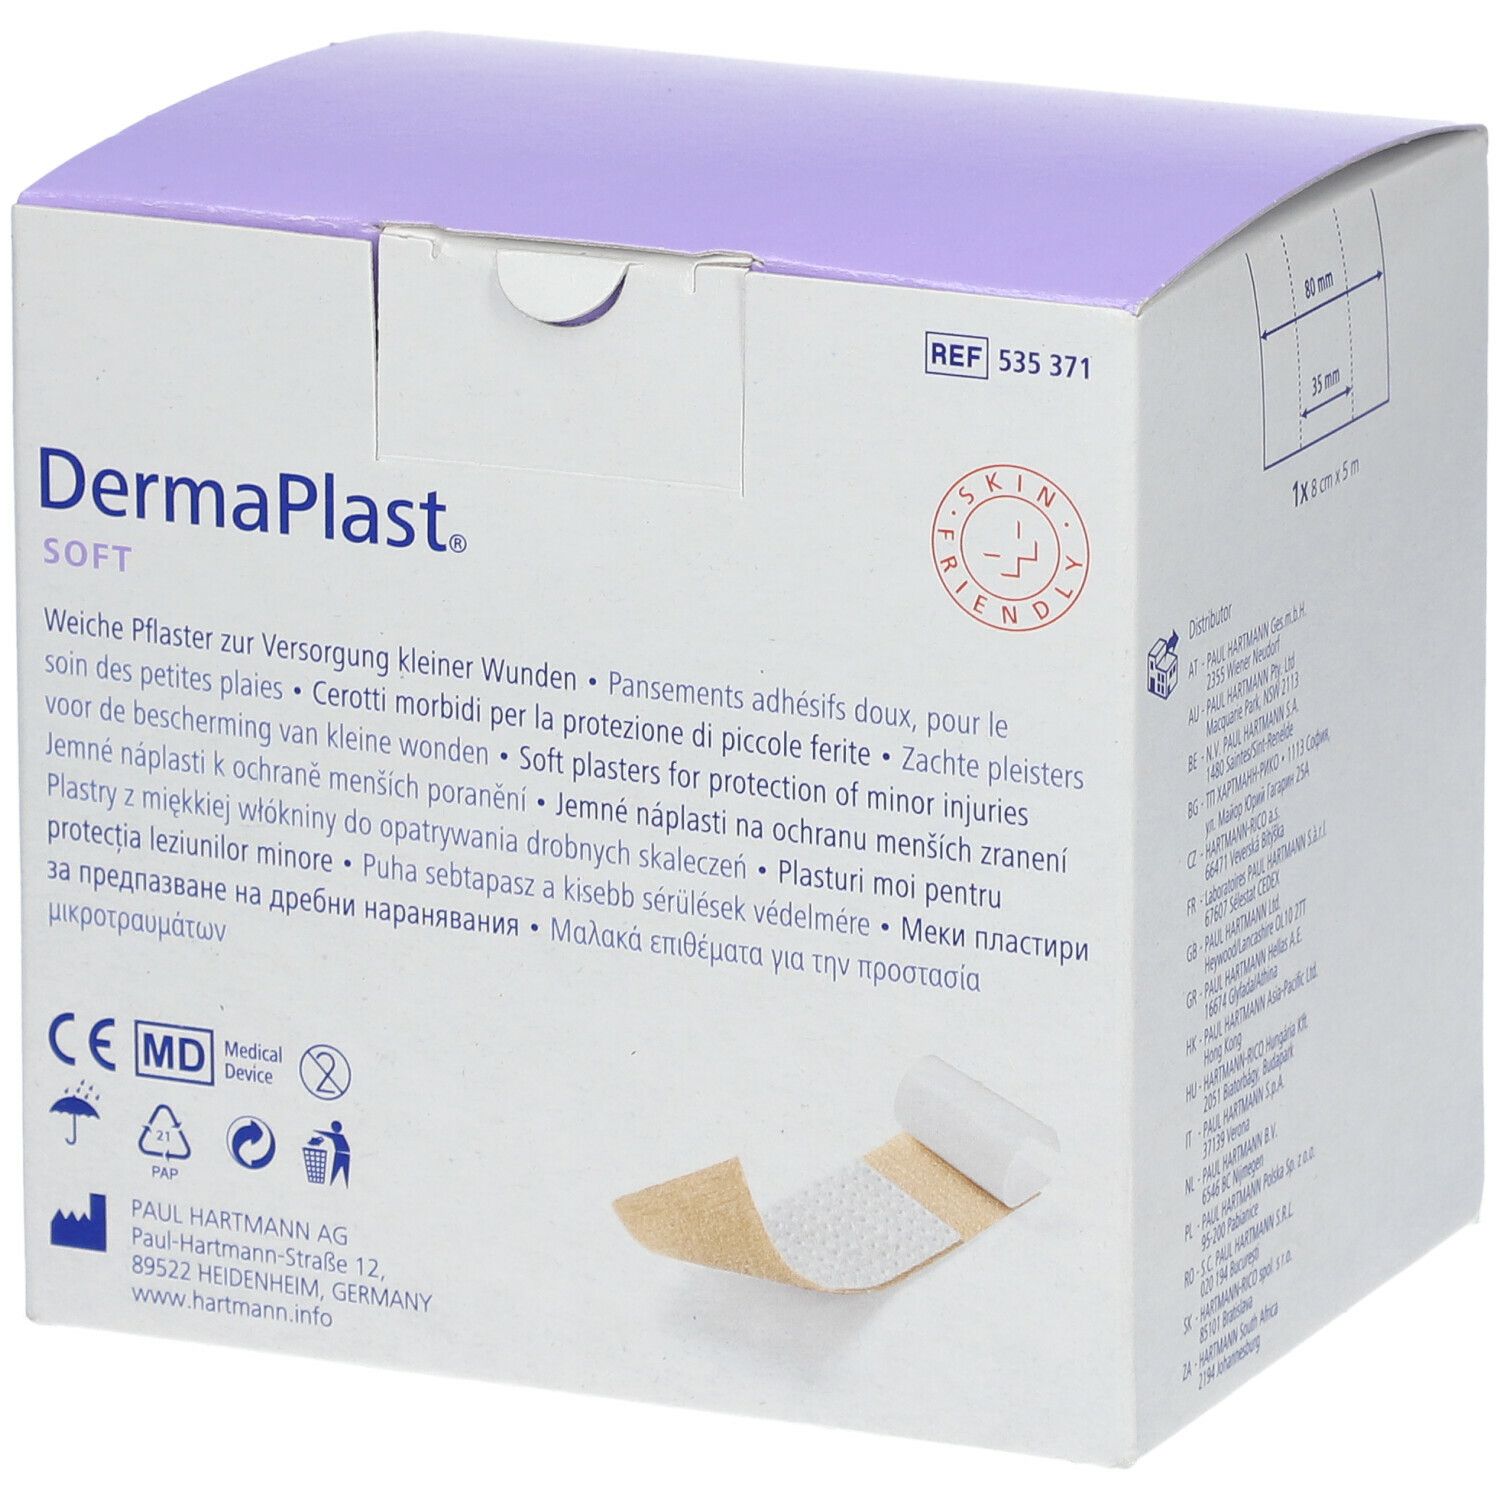 DermaPlast® Soft Wundpflaster 8 cm x 5 m 1 St - SHOP APOTHEKE